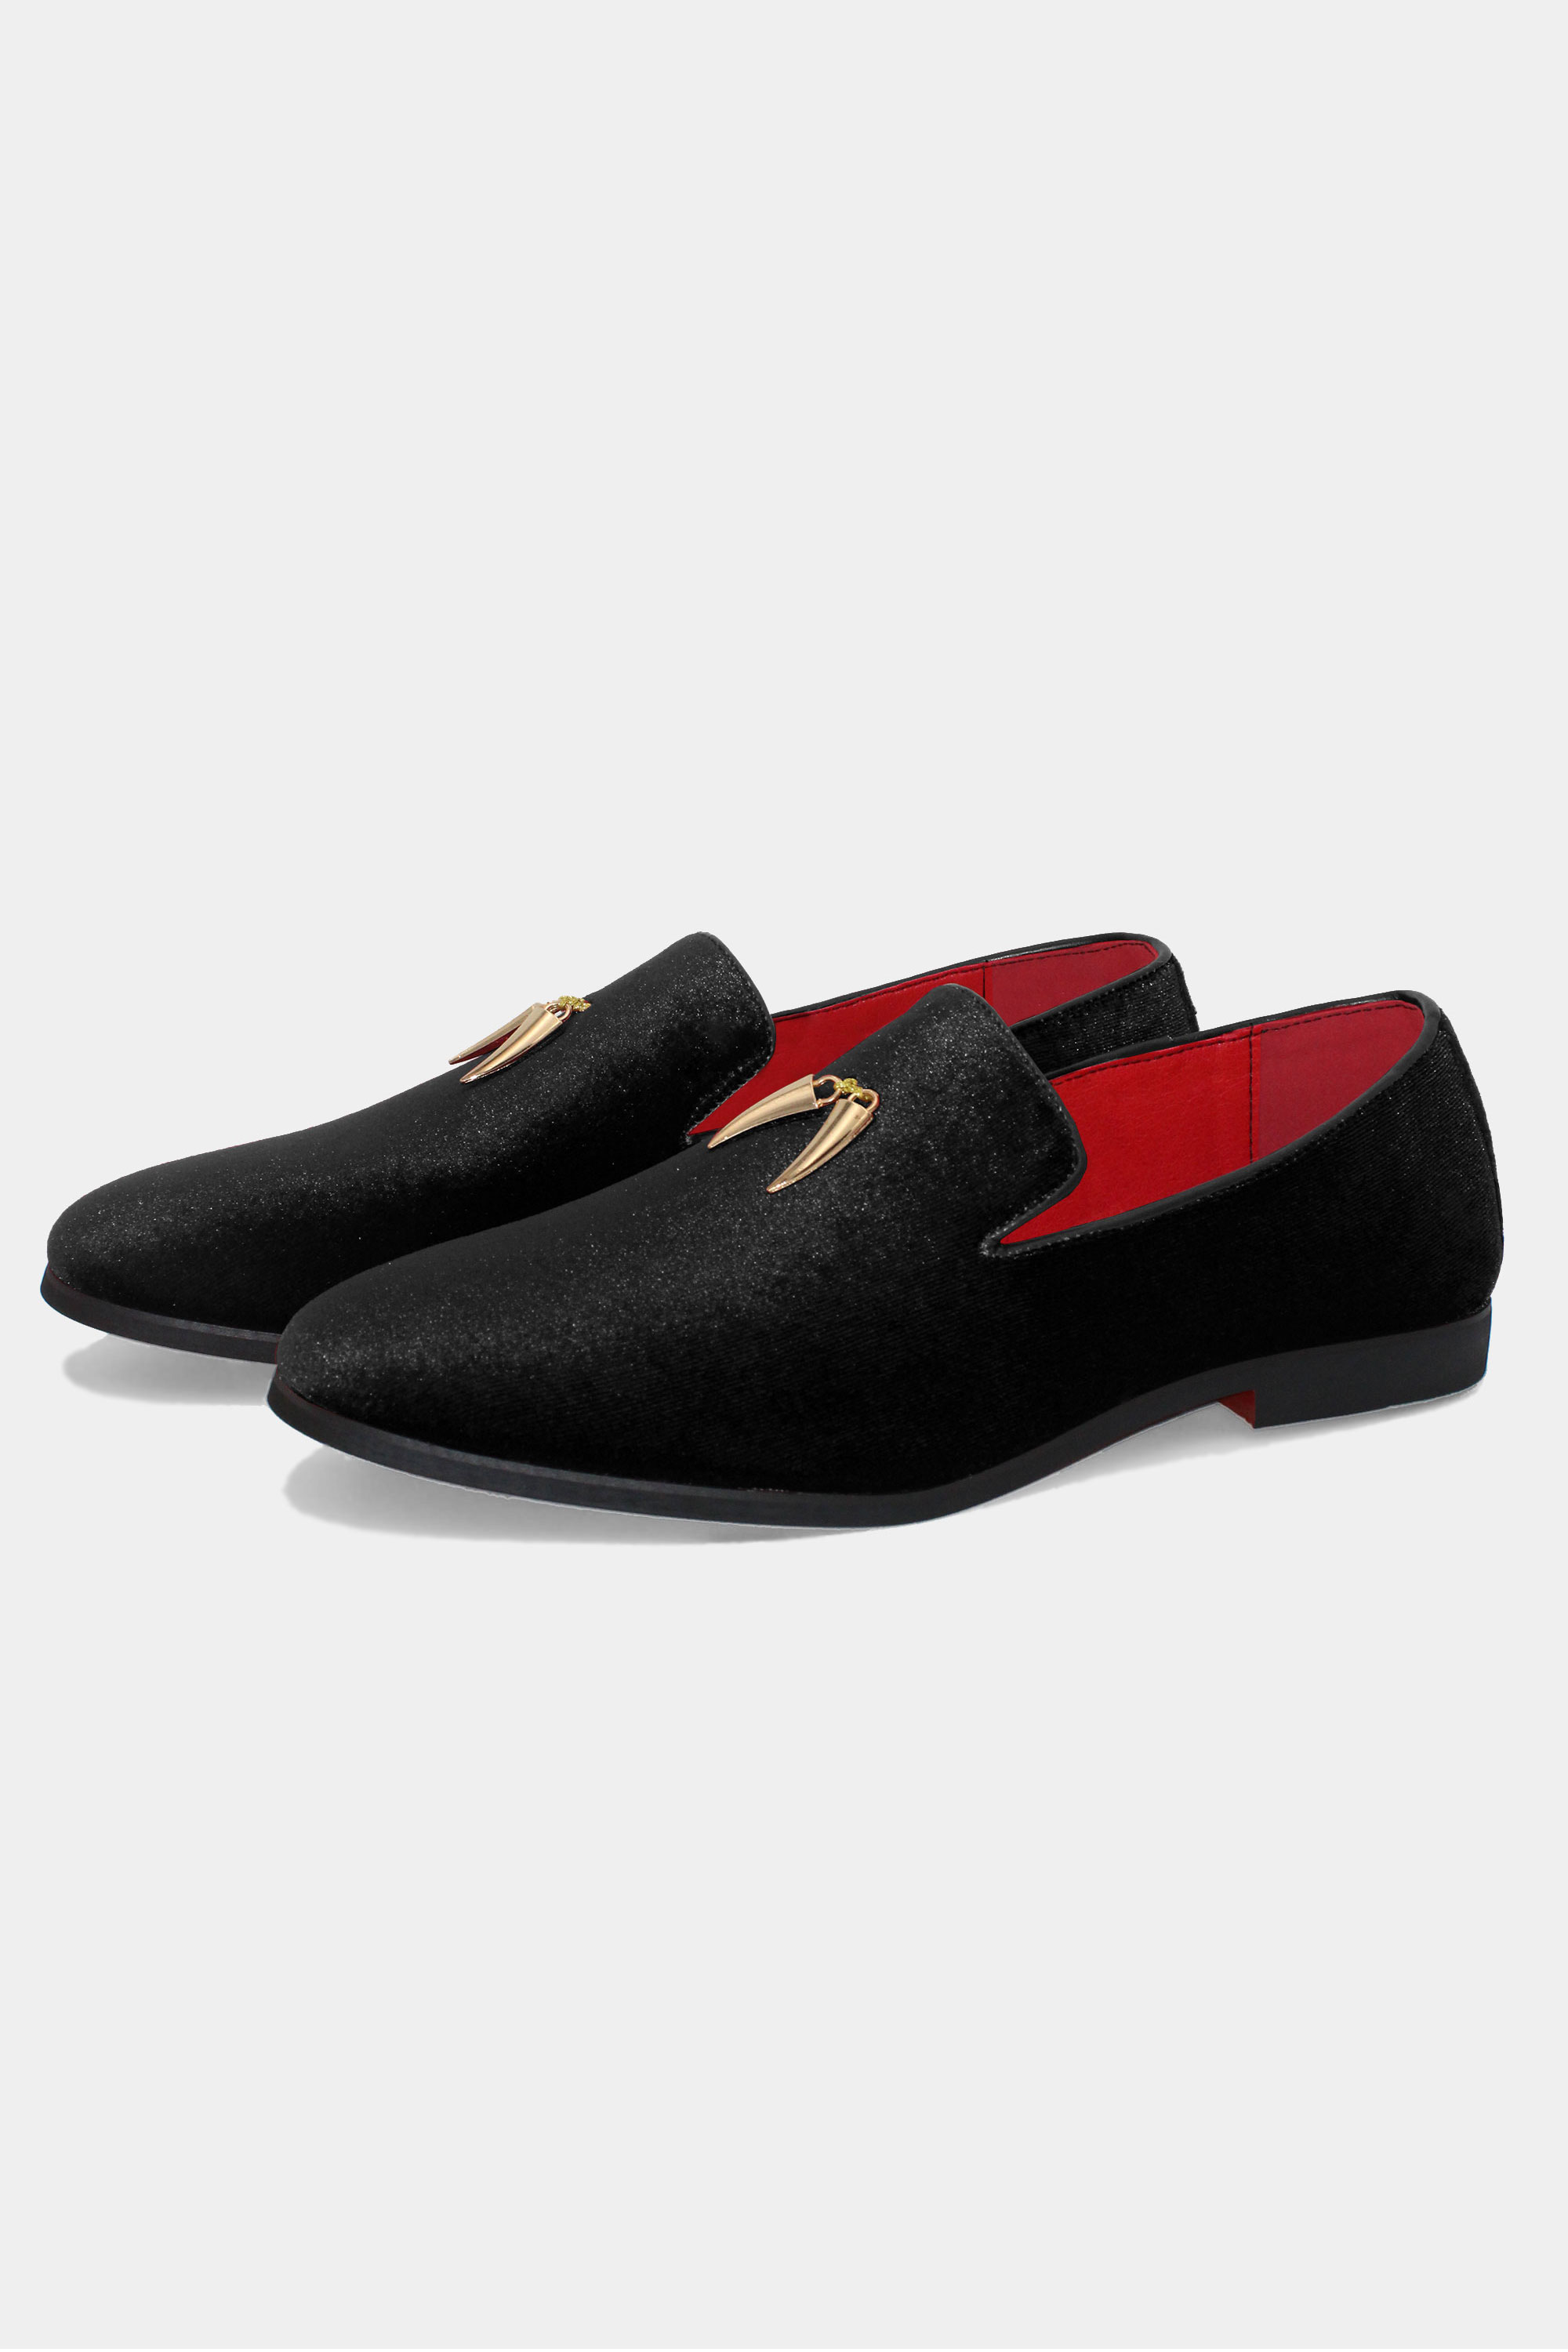 Mens-Black-Velvet-Loafer-Shoes-Suede-Groom-Shoes-from-Gentlemansguru.com